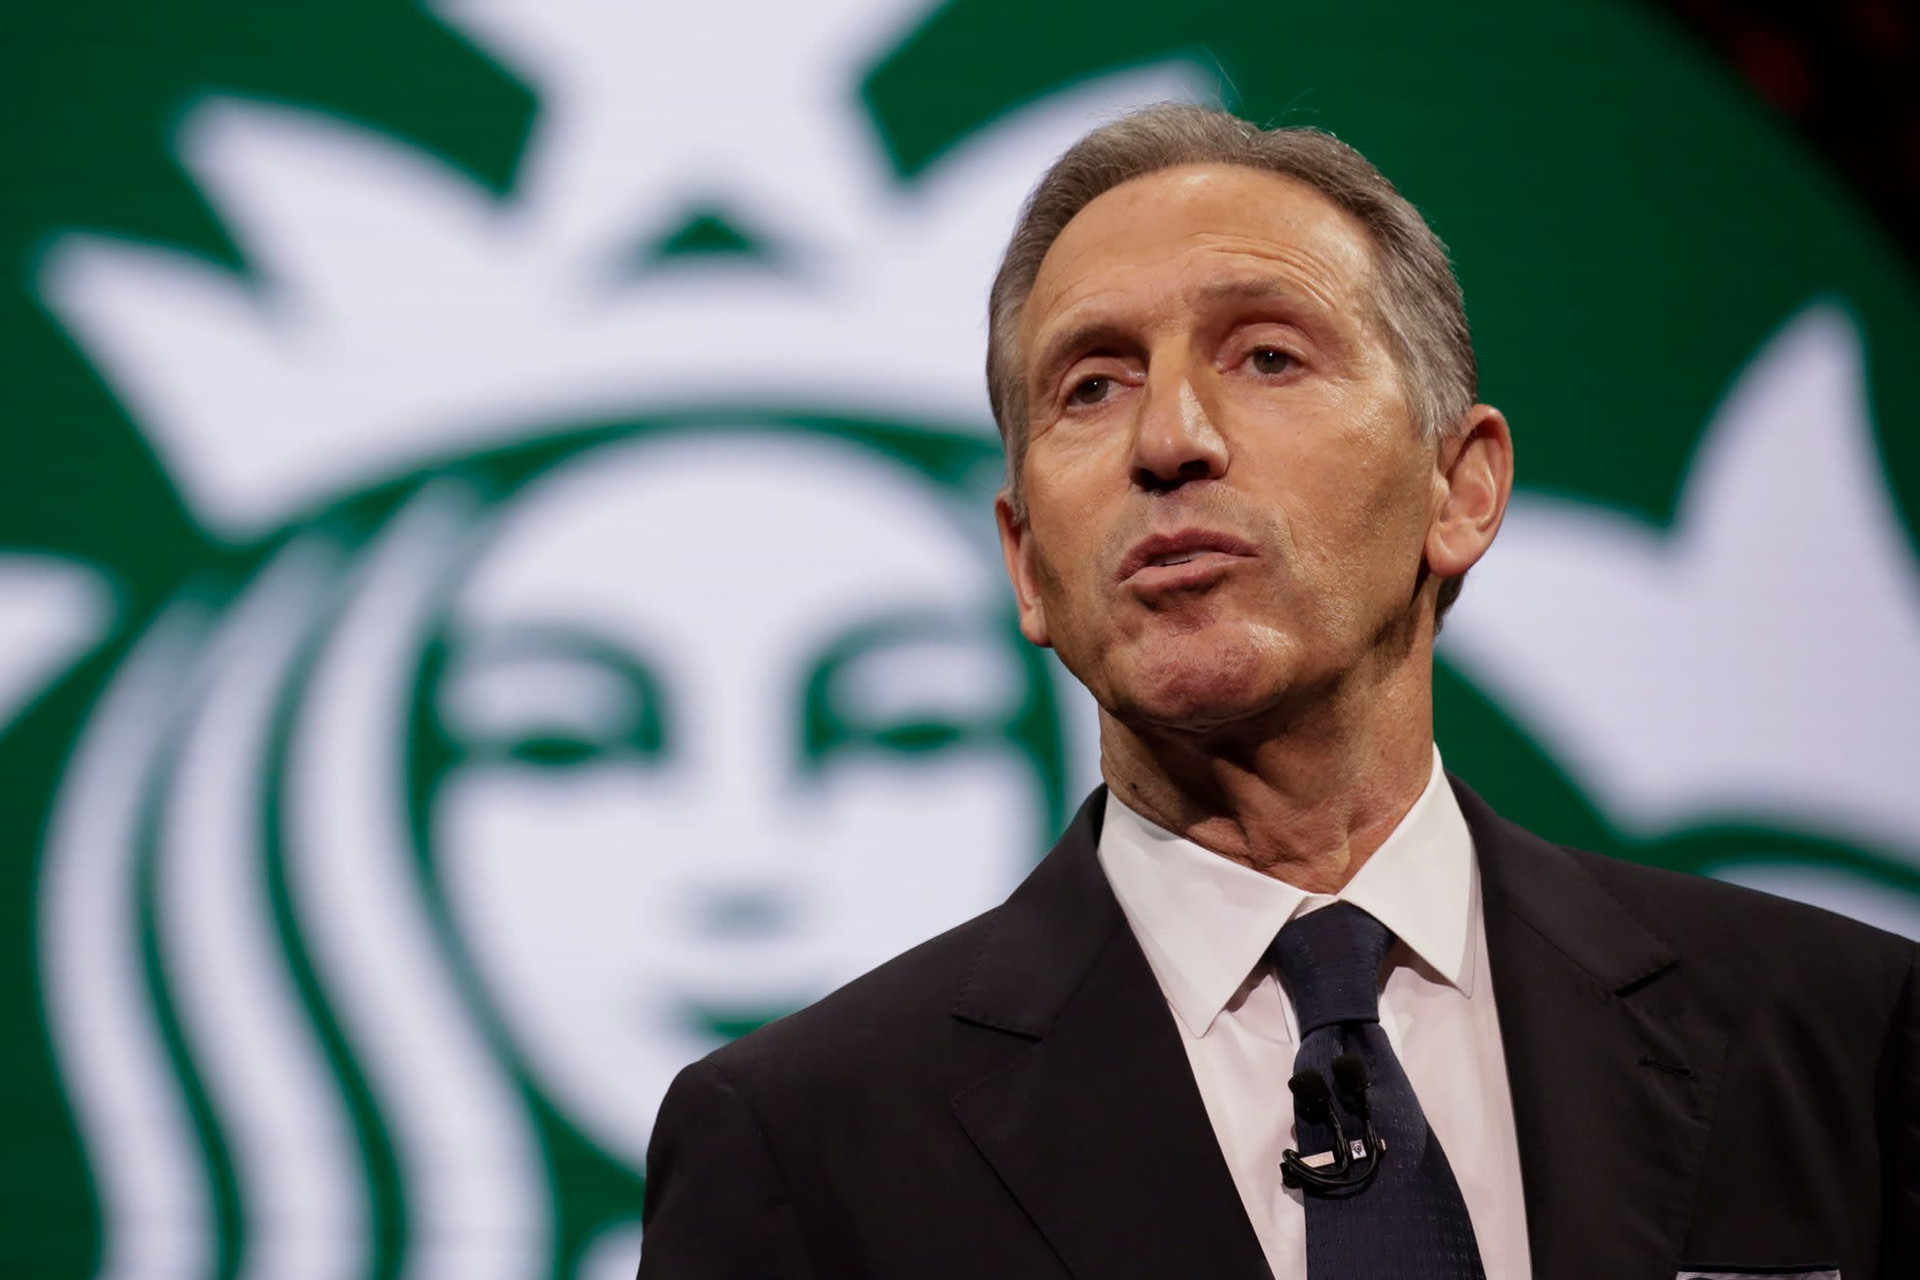 Khủng hoảng ở Starbucks: Hơn 30 năm gây dựng danh tiếng, tất cả đổ bể vì những lao động 'trẻ trâu' - Ảnh 2.